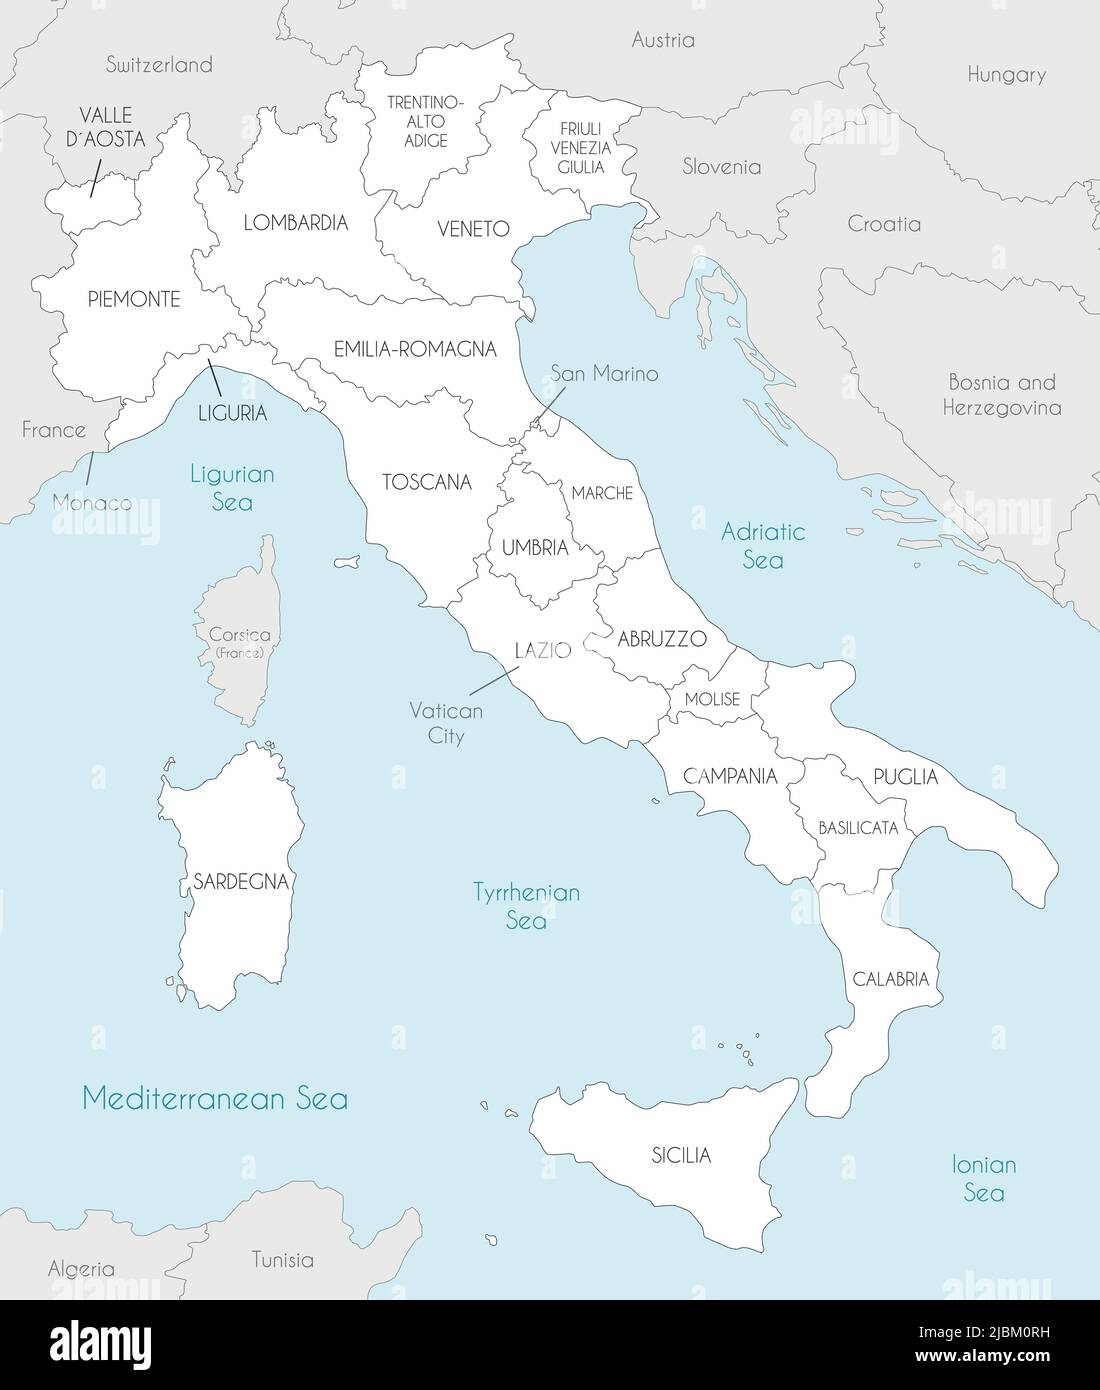 Mappa vettoriale dell'Italia con regioni e divisioni amministrative e paesi e territori limitrofi. Livelli modificabili e chiaramente etichettati. Illustrazione Vettoriale